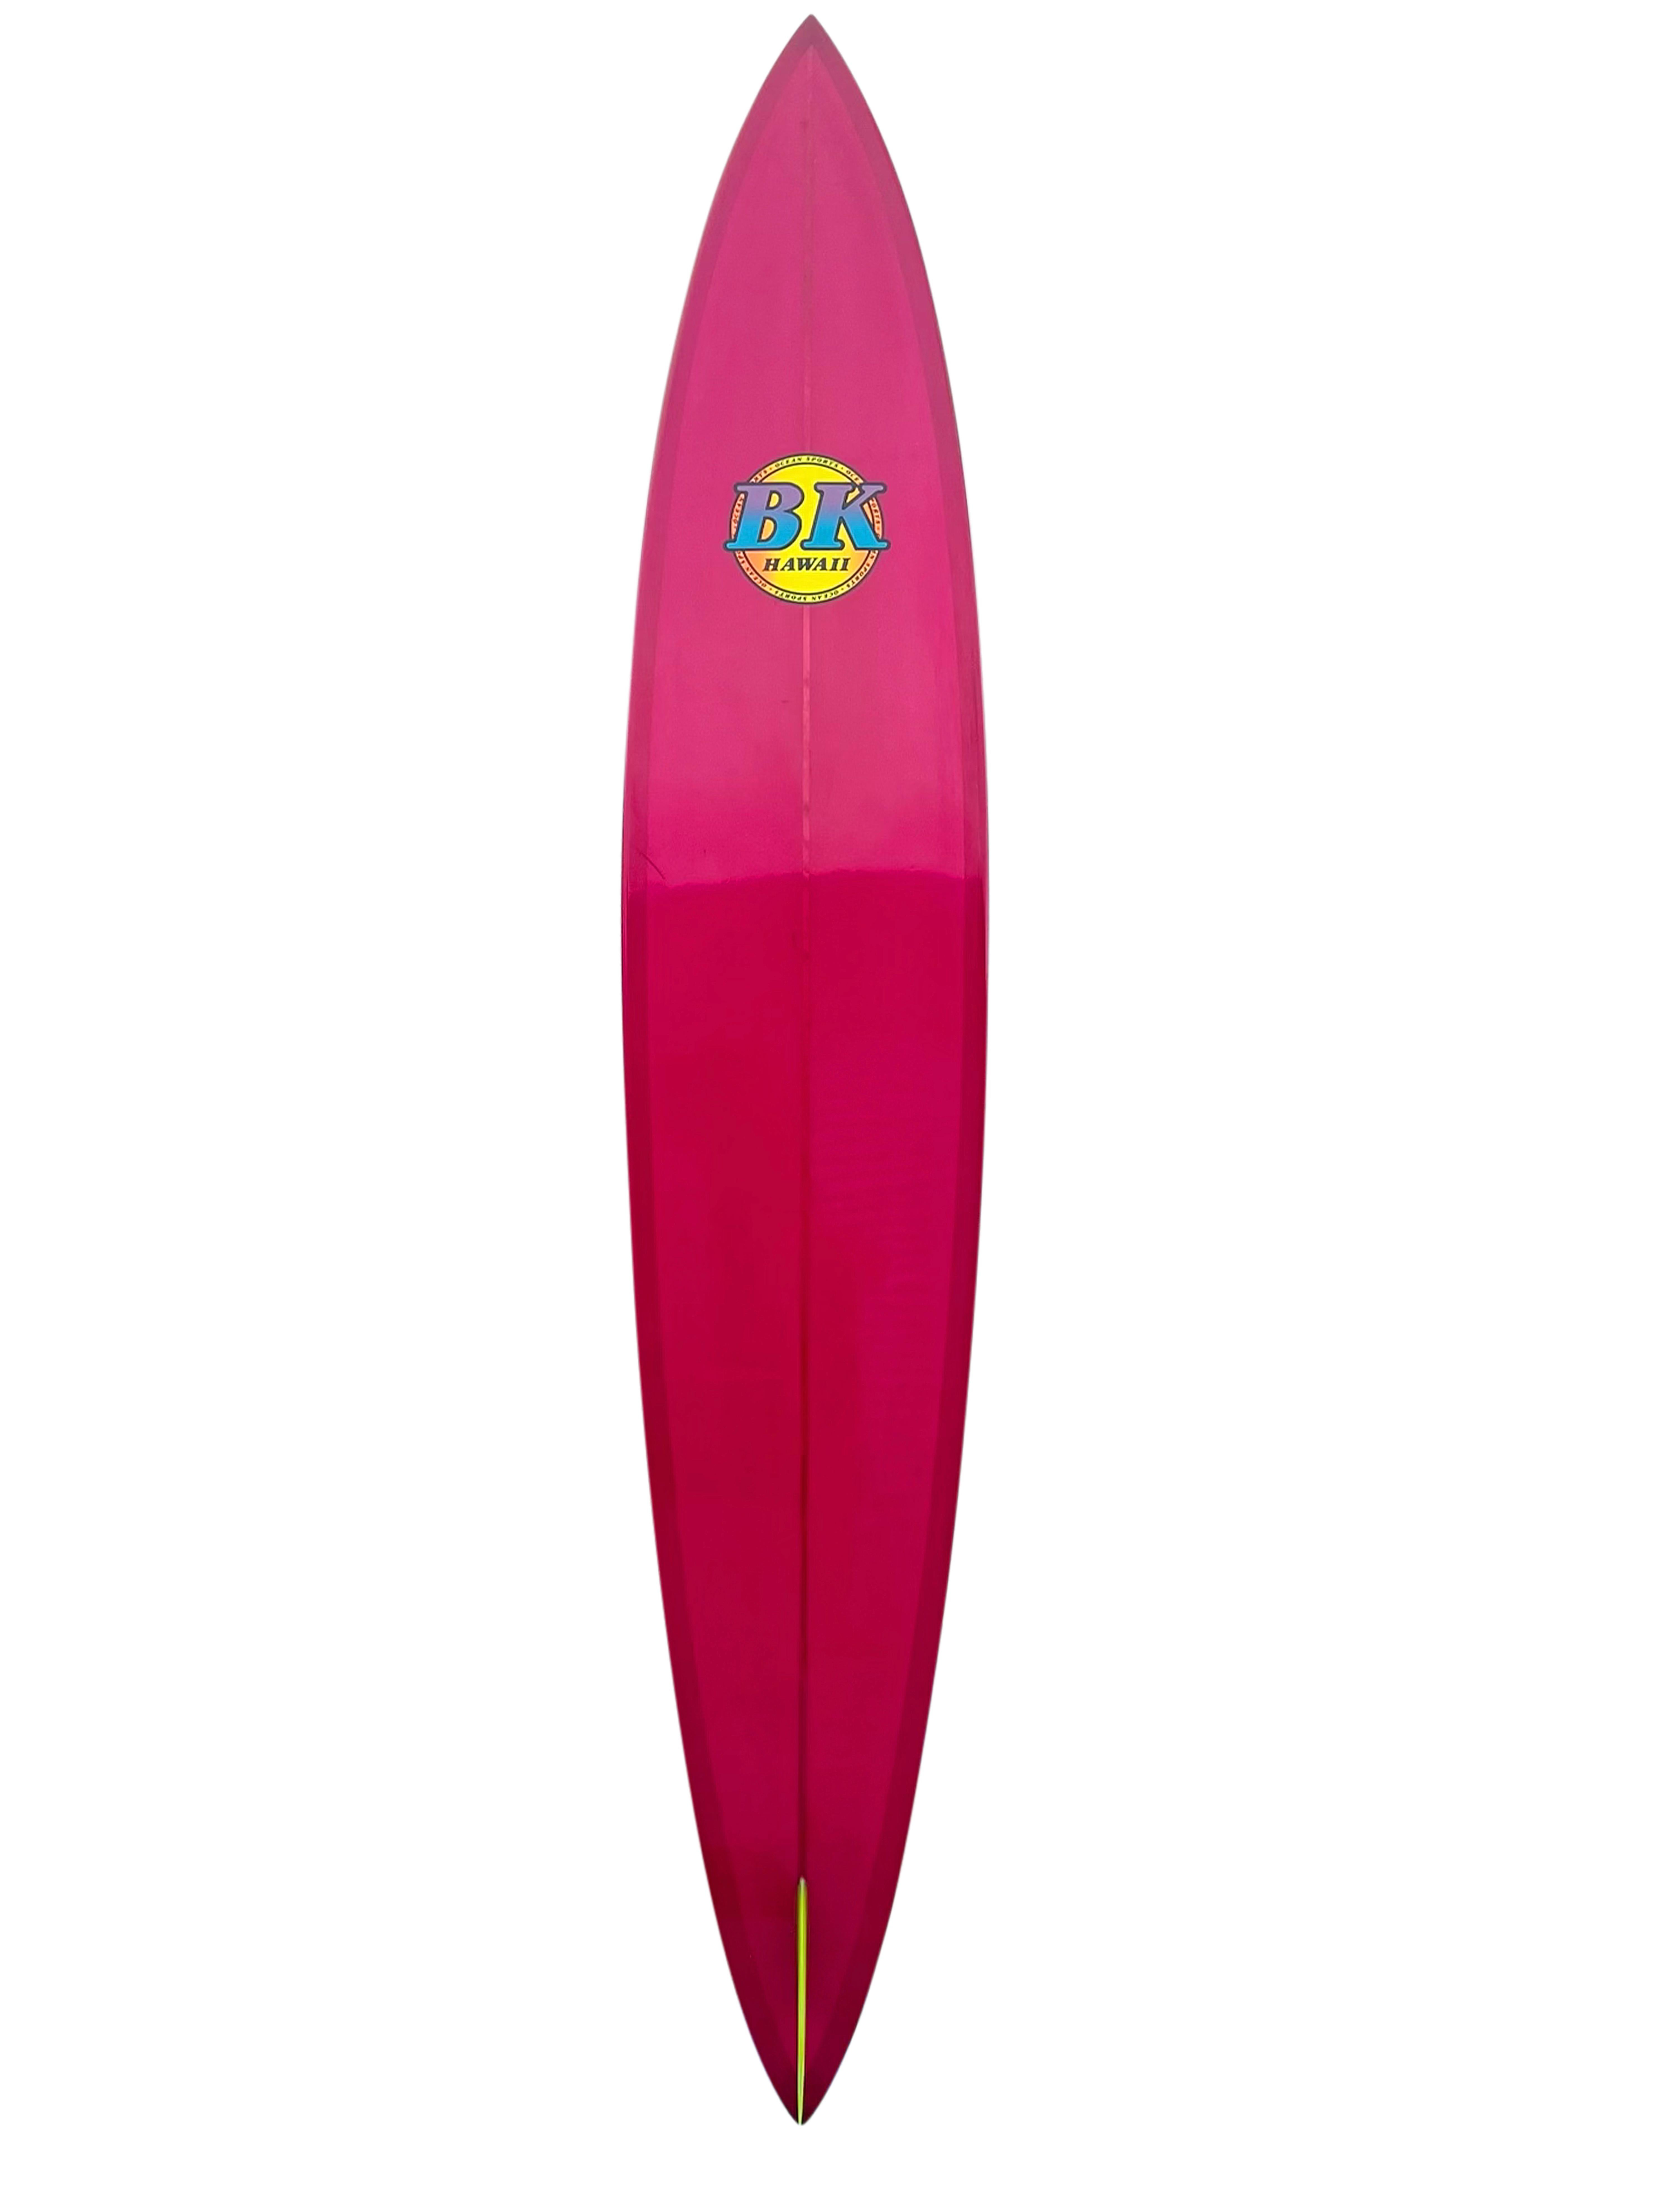 1991 vintage BK Hawaii big wave surfboard made by Barry Kanaiaupuni. Pintail-Form mit auffälliger magentafarbener Tönung und neongelber Flosse. Ein hervorragendes Beispiel für ein Vintage-Big-Wave-Surfbrett, das zum Reiten von Riesenwellen in der